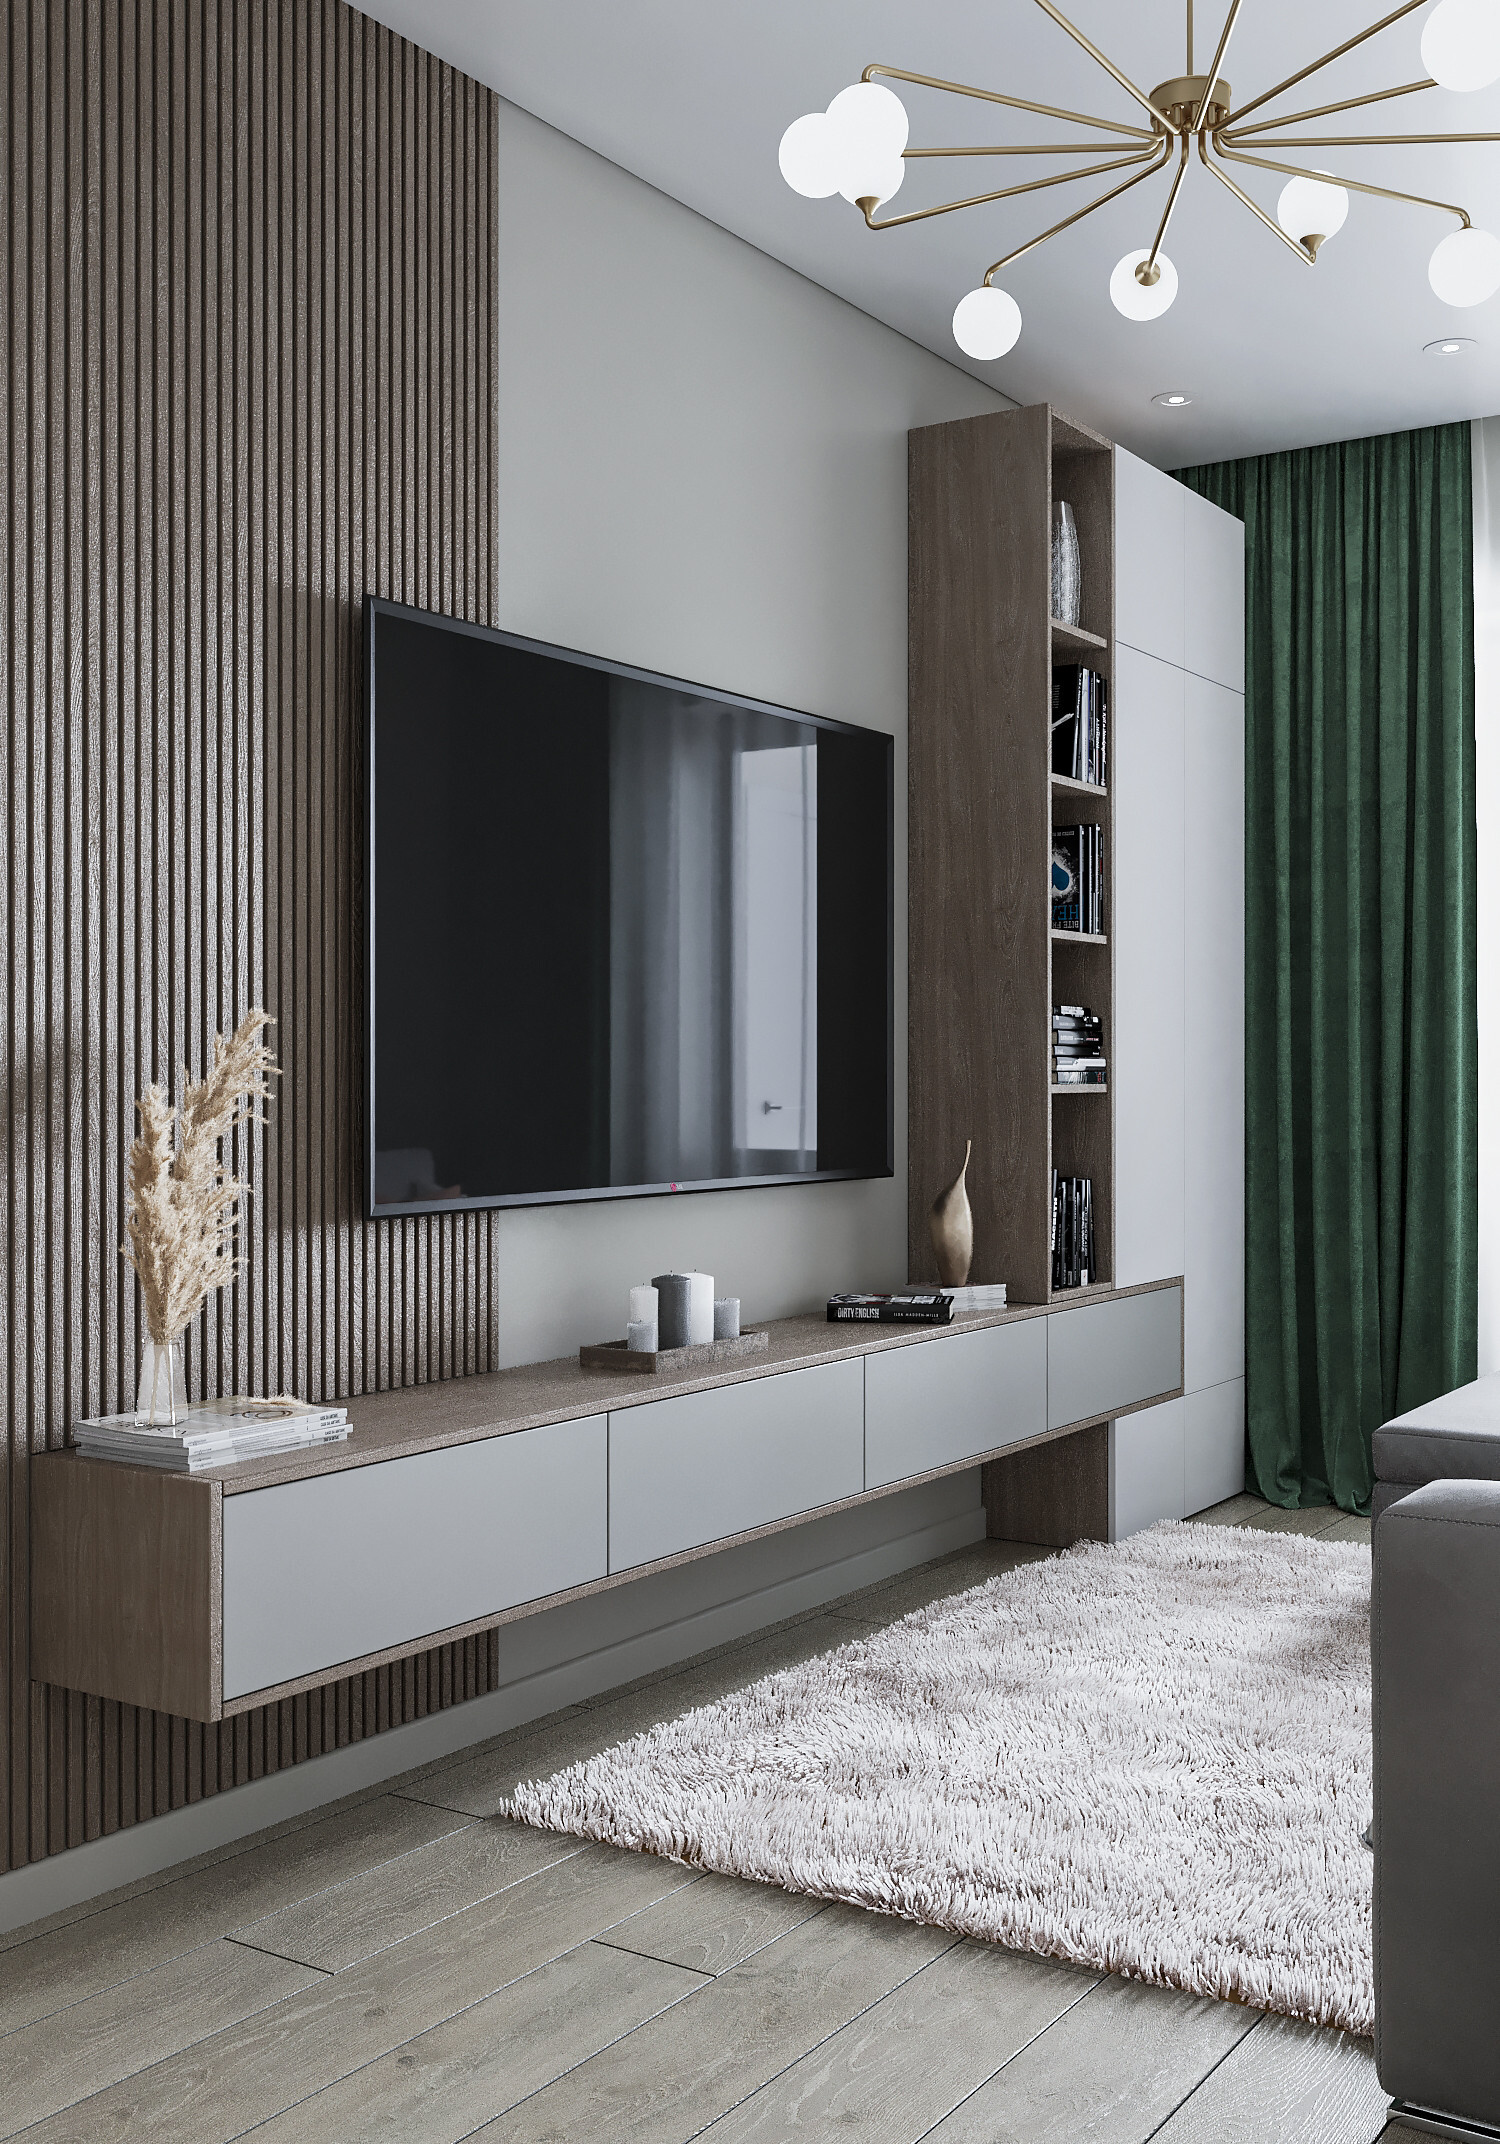 Интерьер cтеной с телевизором, телевизором на рейках, телевизором на стене и керамогранитом на стену с телевизором в современном стиле